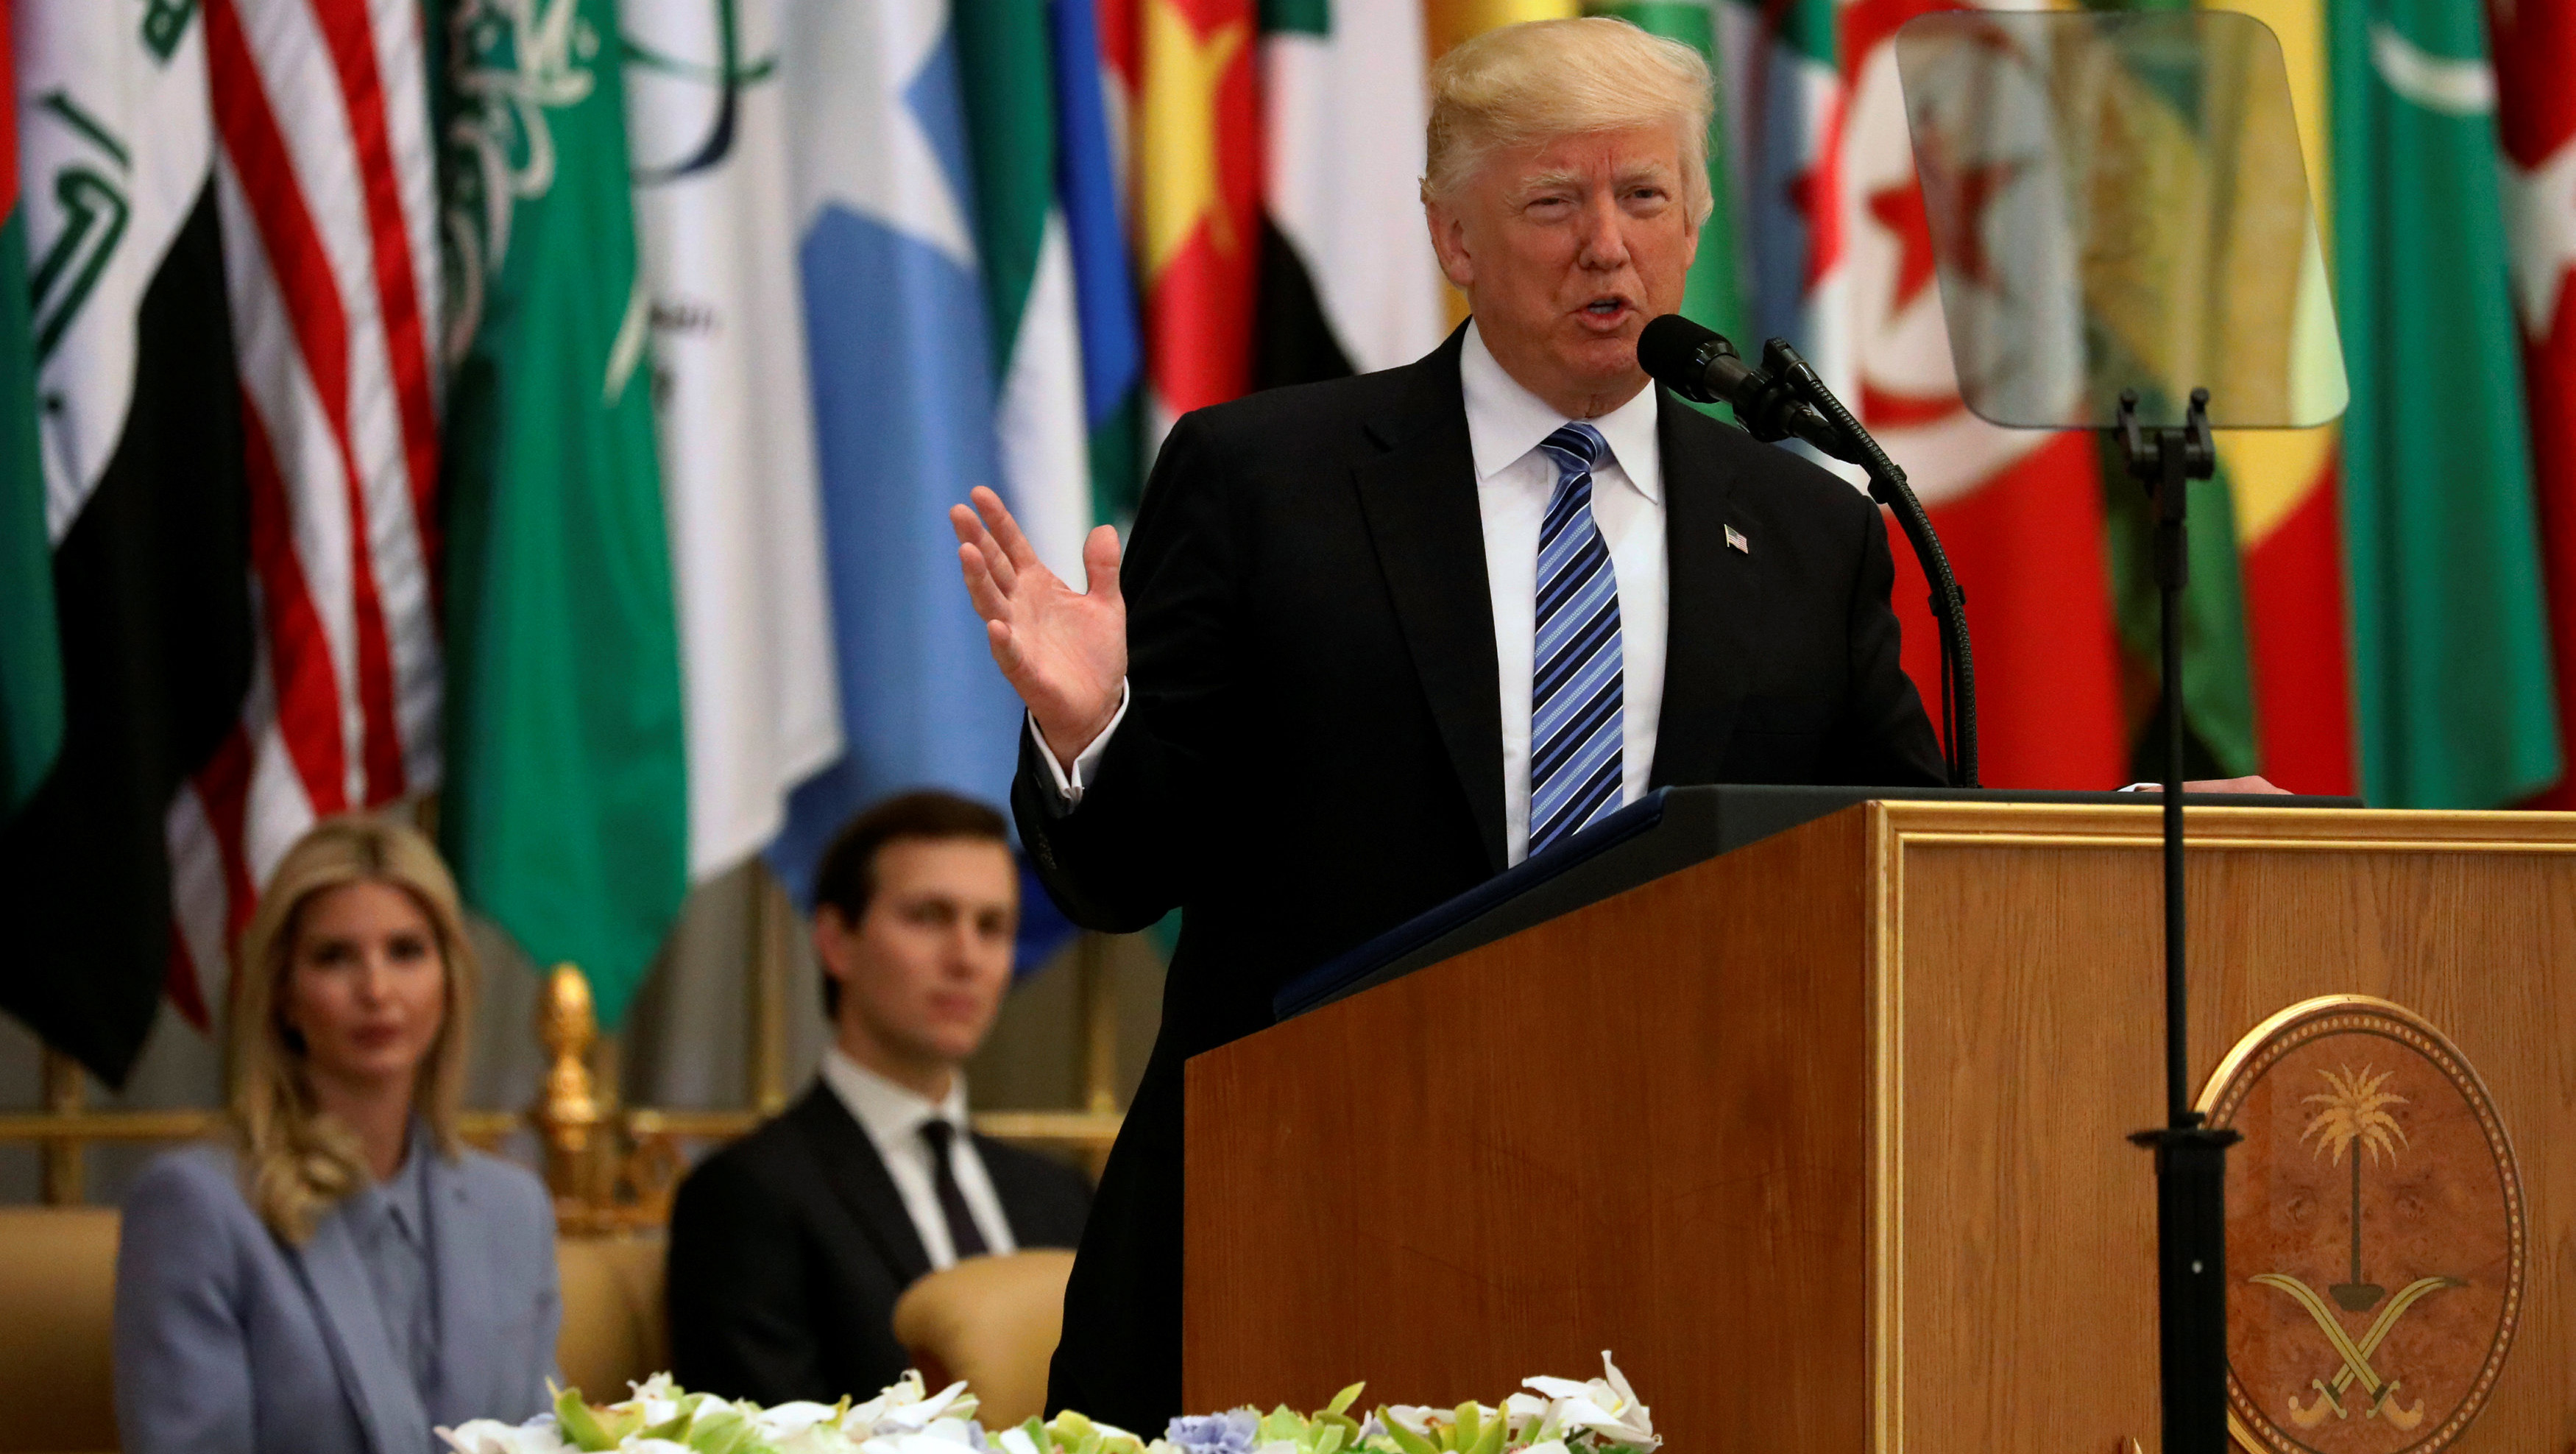 El presidente Trump durante su discurso en Arabia Saudita. Al fondo su hija Ivanka y su yerno Jared Kushner.